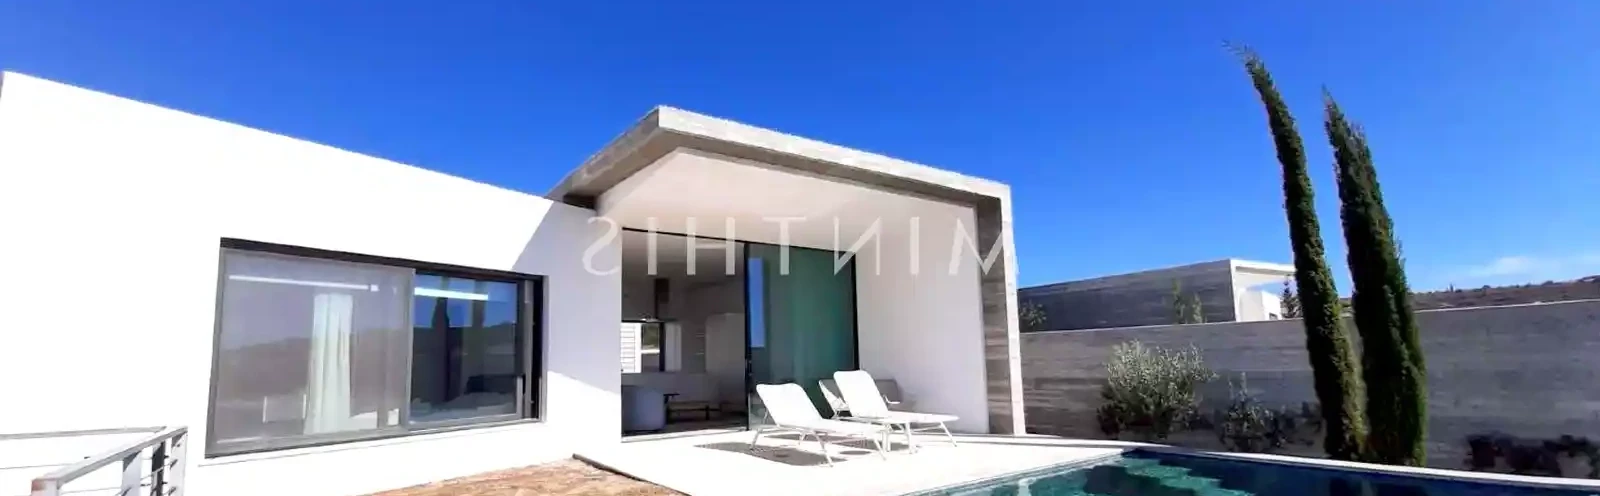 2-bedroom villa to rent €3.500, image 1